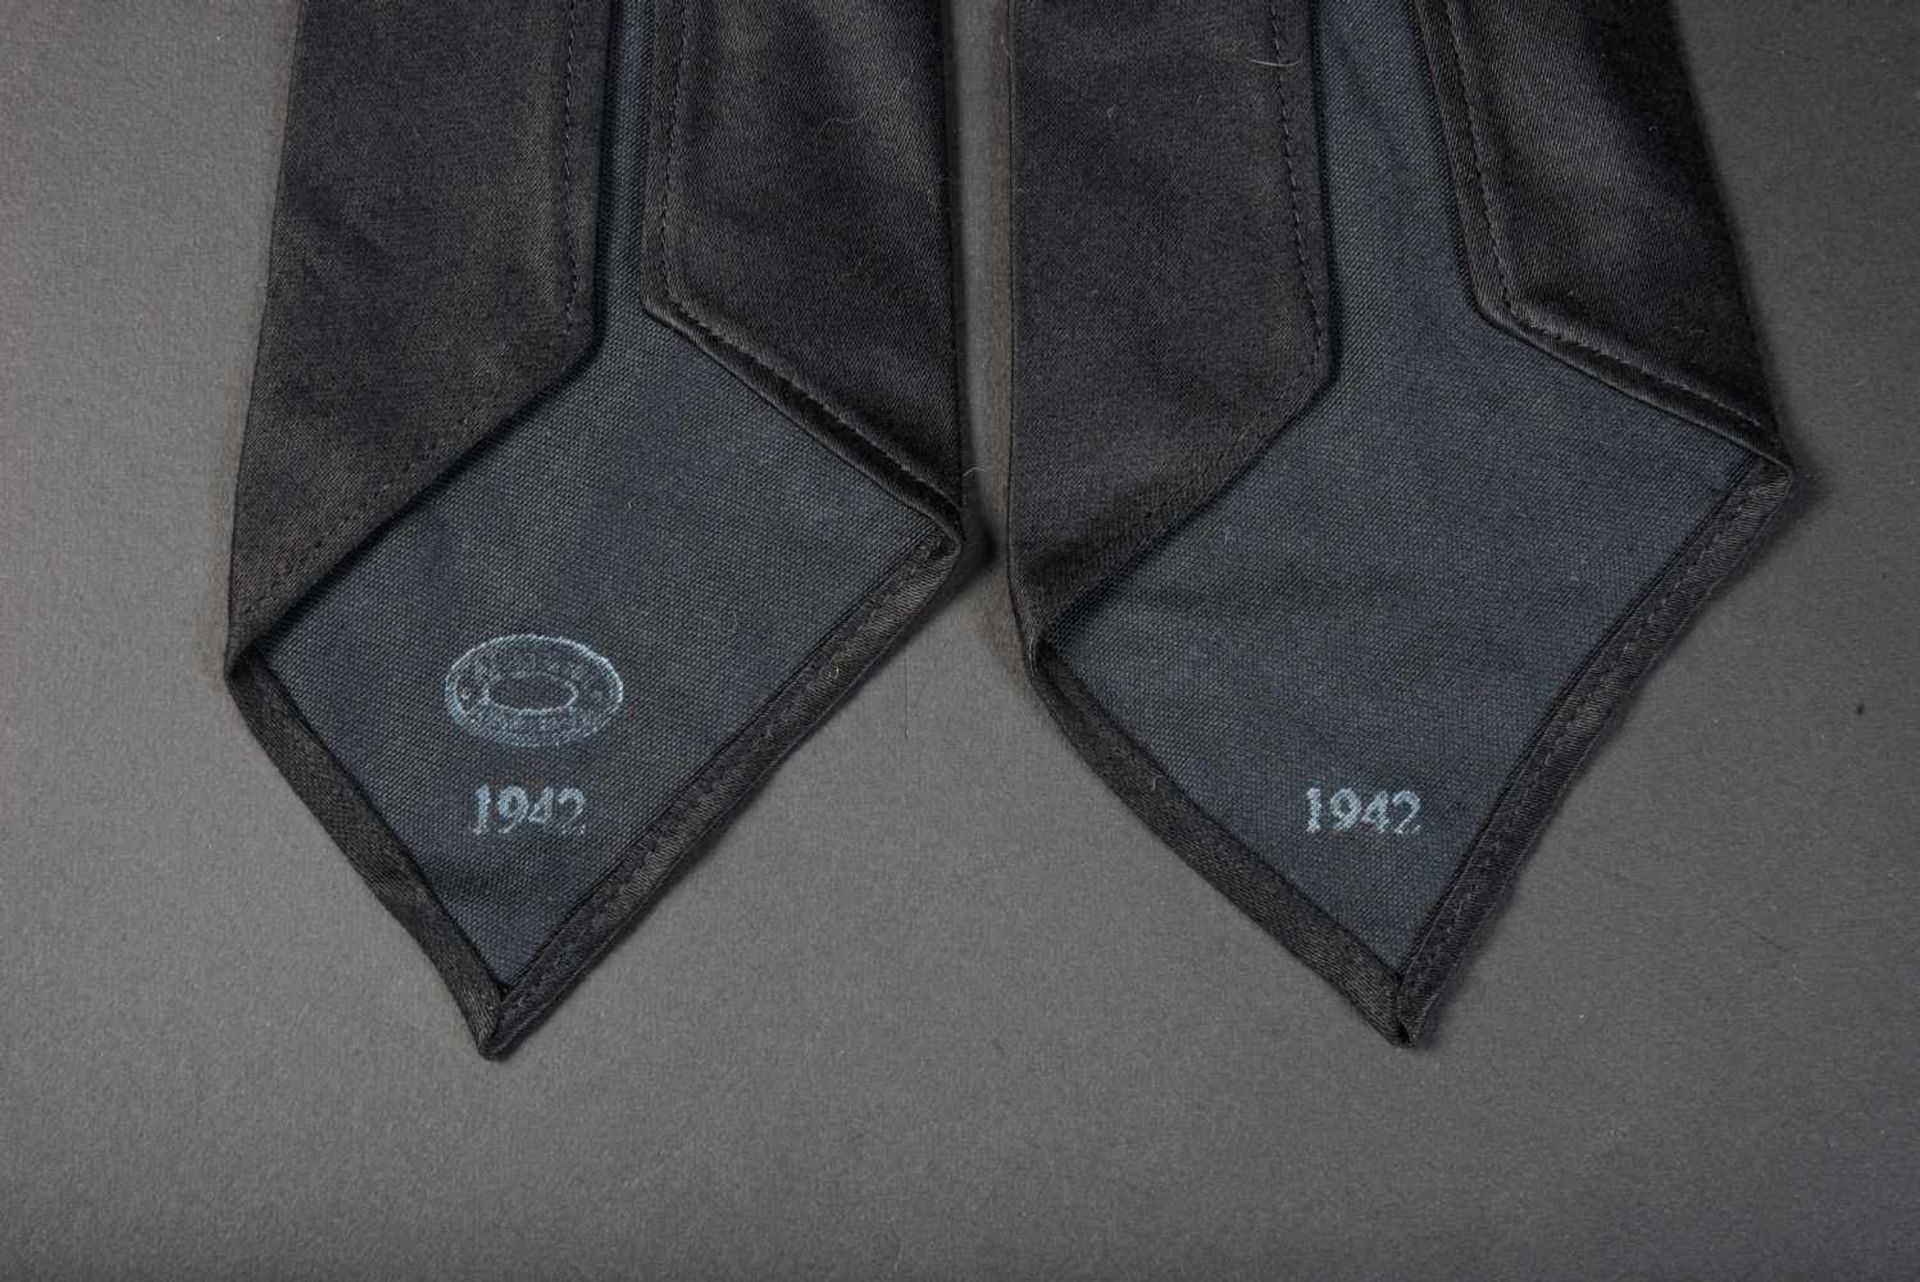 Cravates de la Heer En tissu coton noir, datées 1942. Photos supplémentaires sur www.aiolfi.com. - Bild 2 aus 2